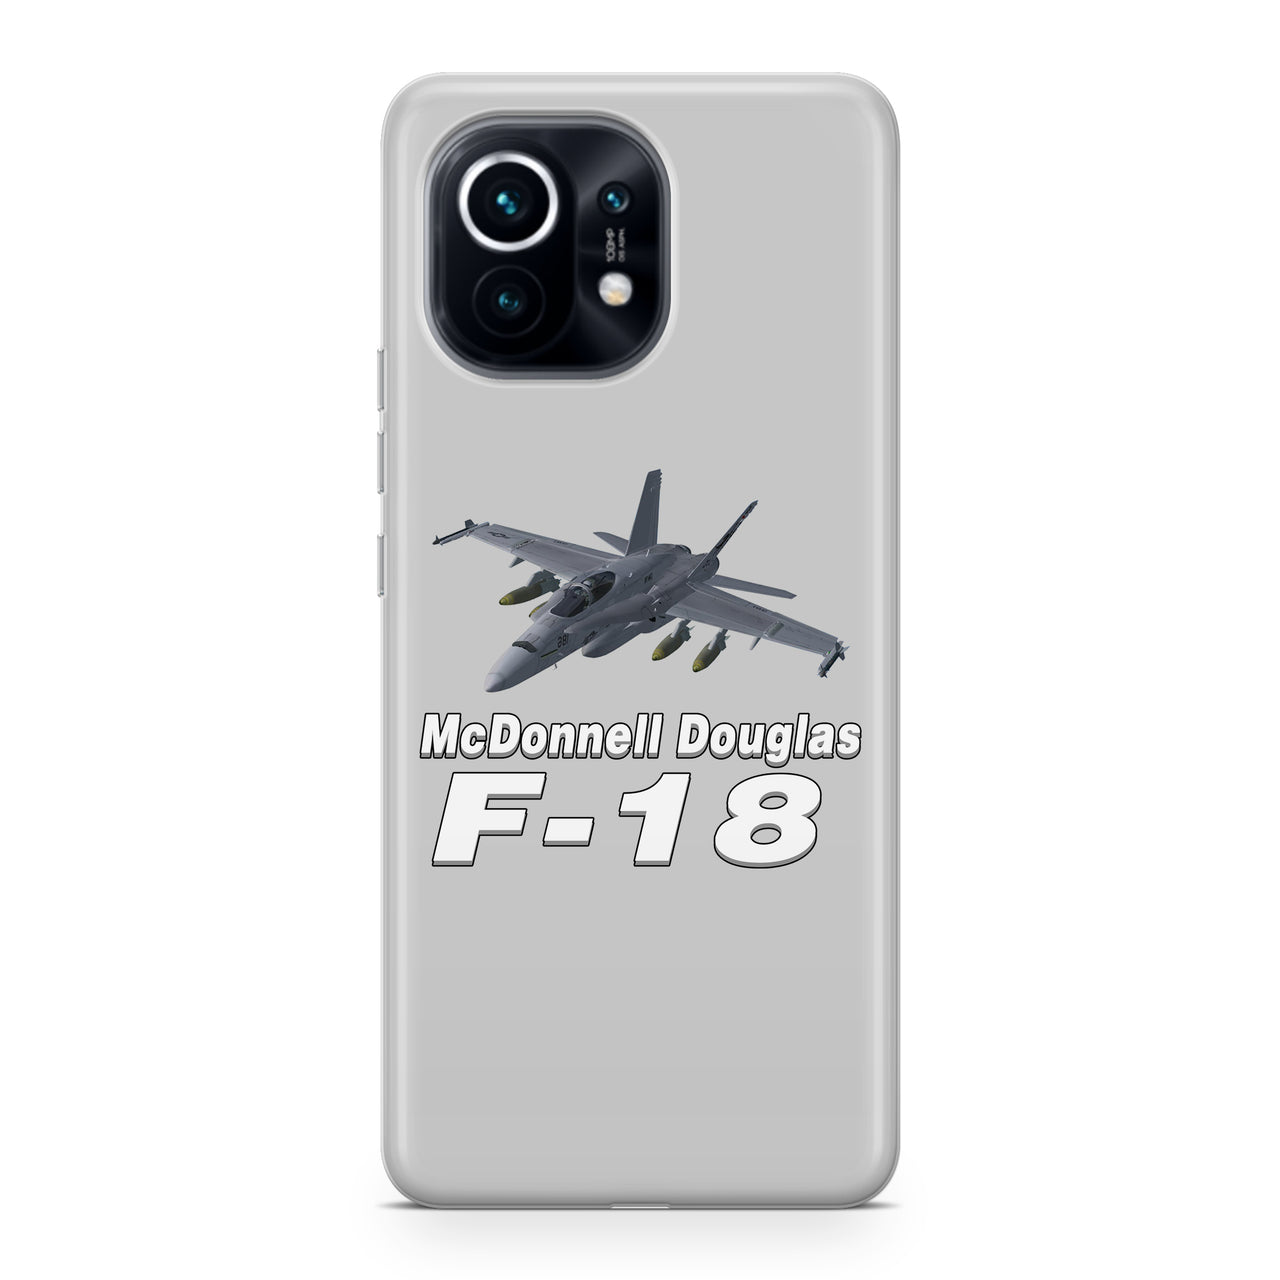 The McDonnell Douglas F18 Designed Xiaomi Cases